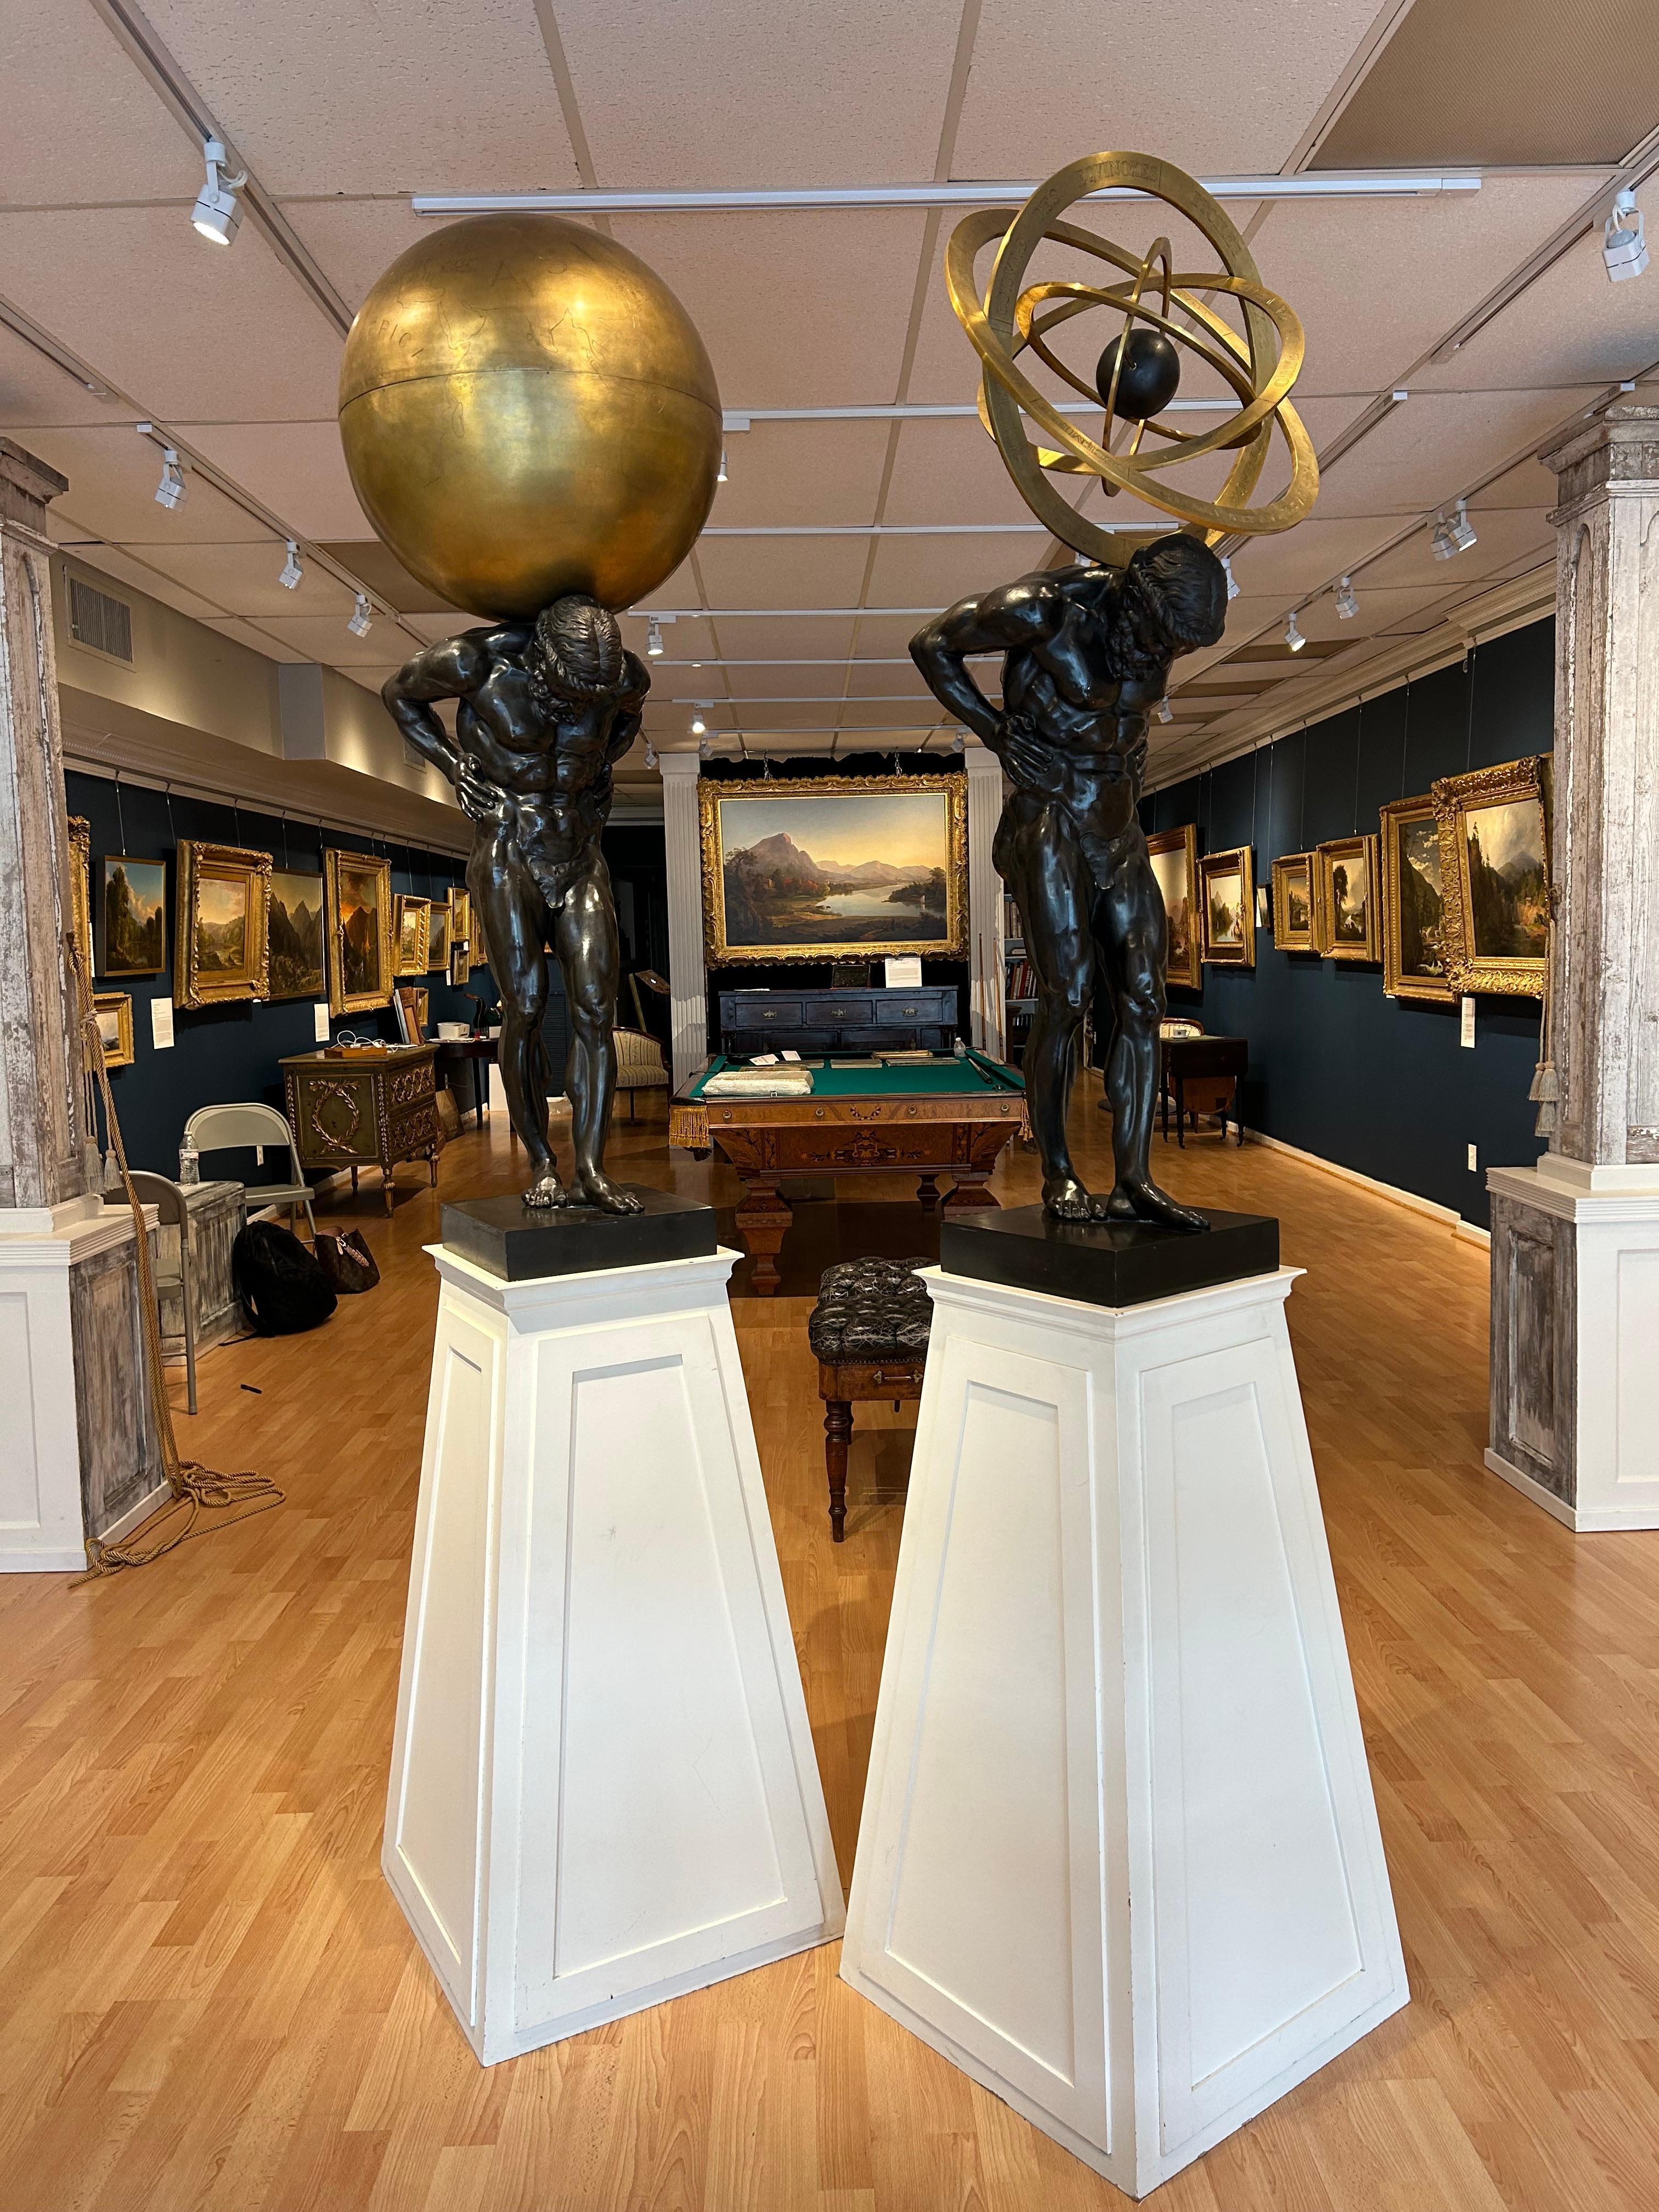 Paire de sculptures Atlas en bronze de la fin du XIXe siècle avec globe et sphère armillaire